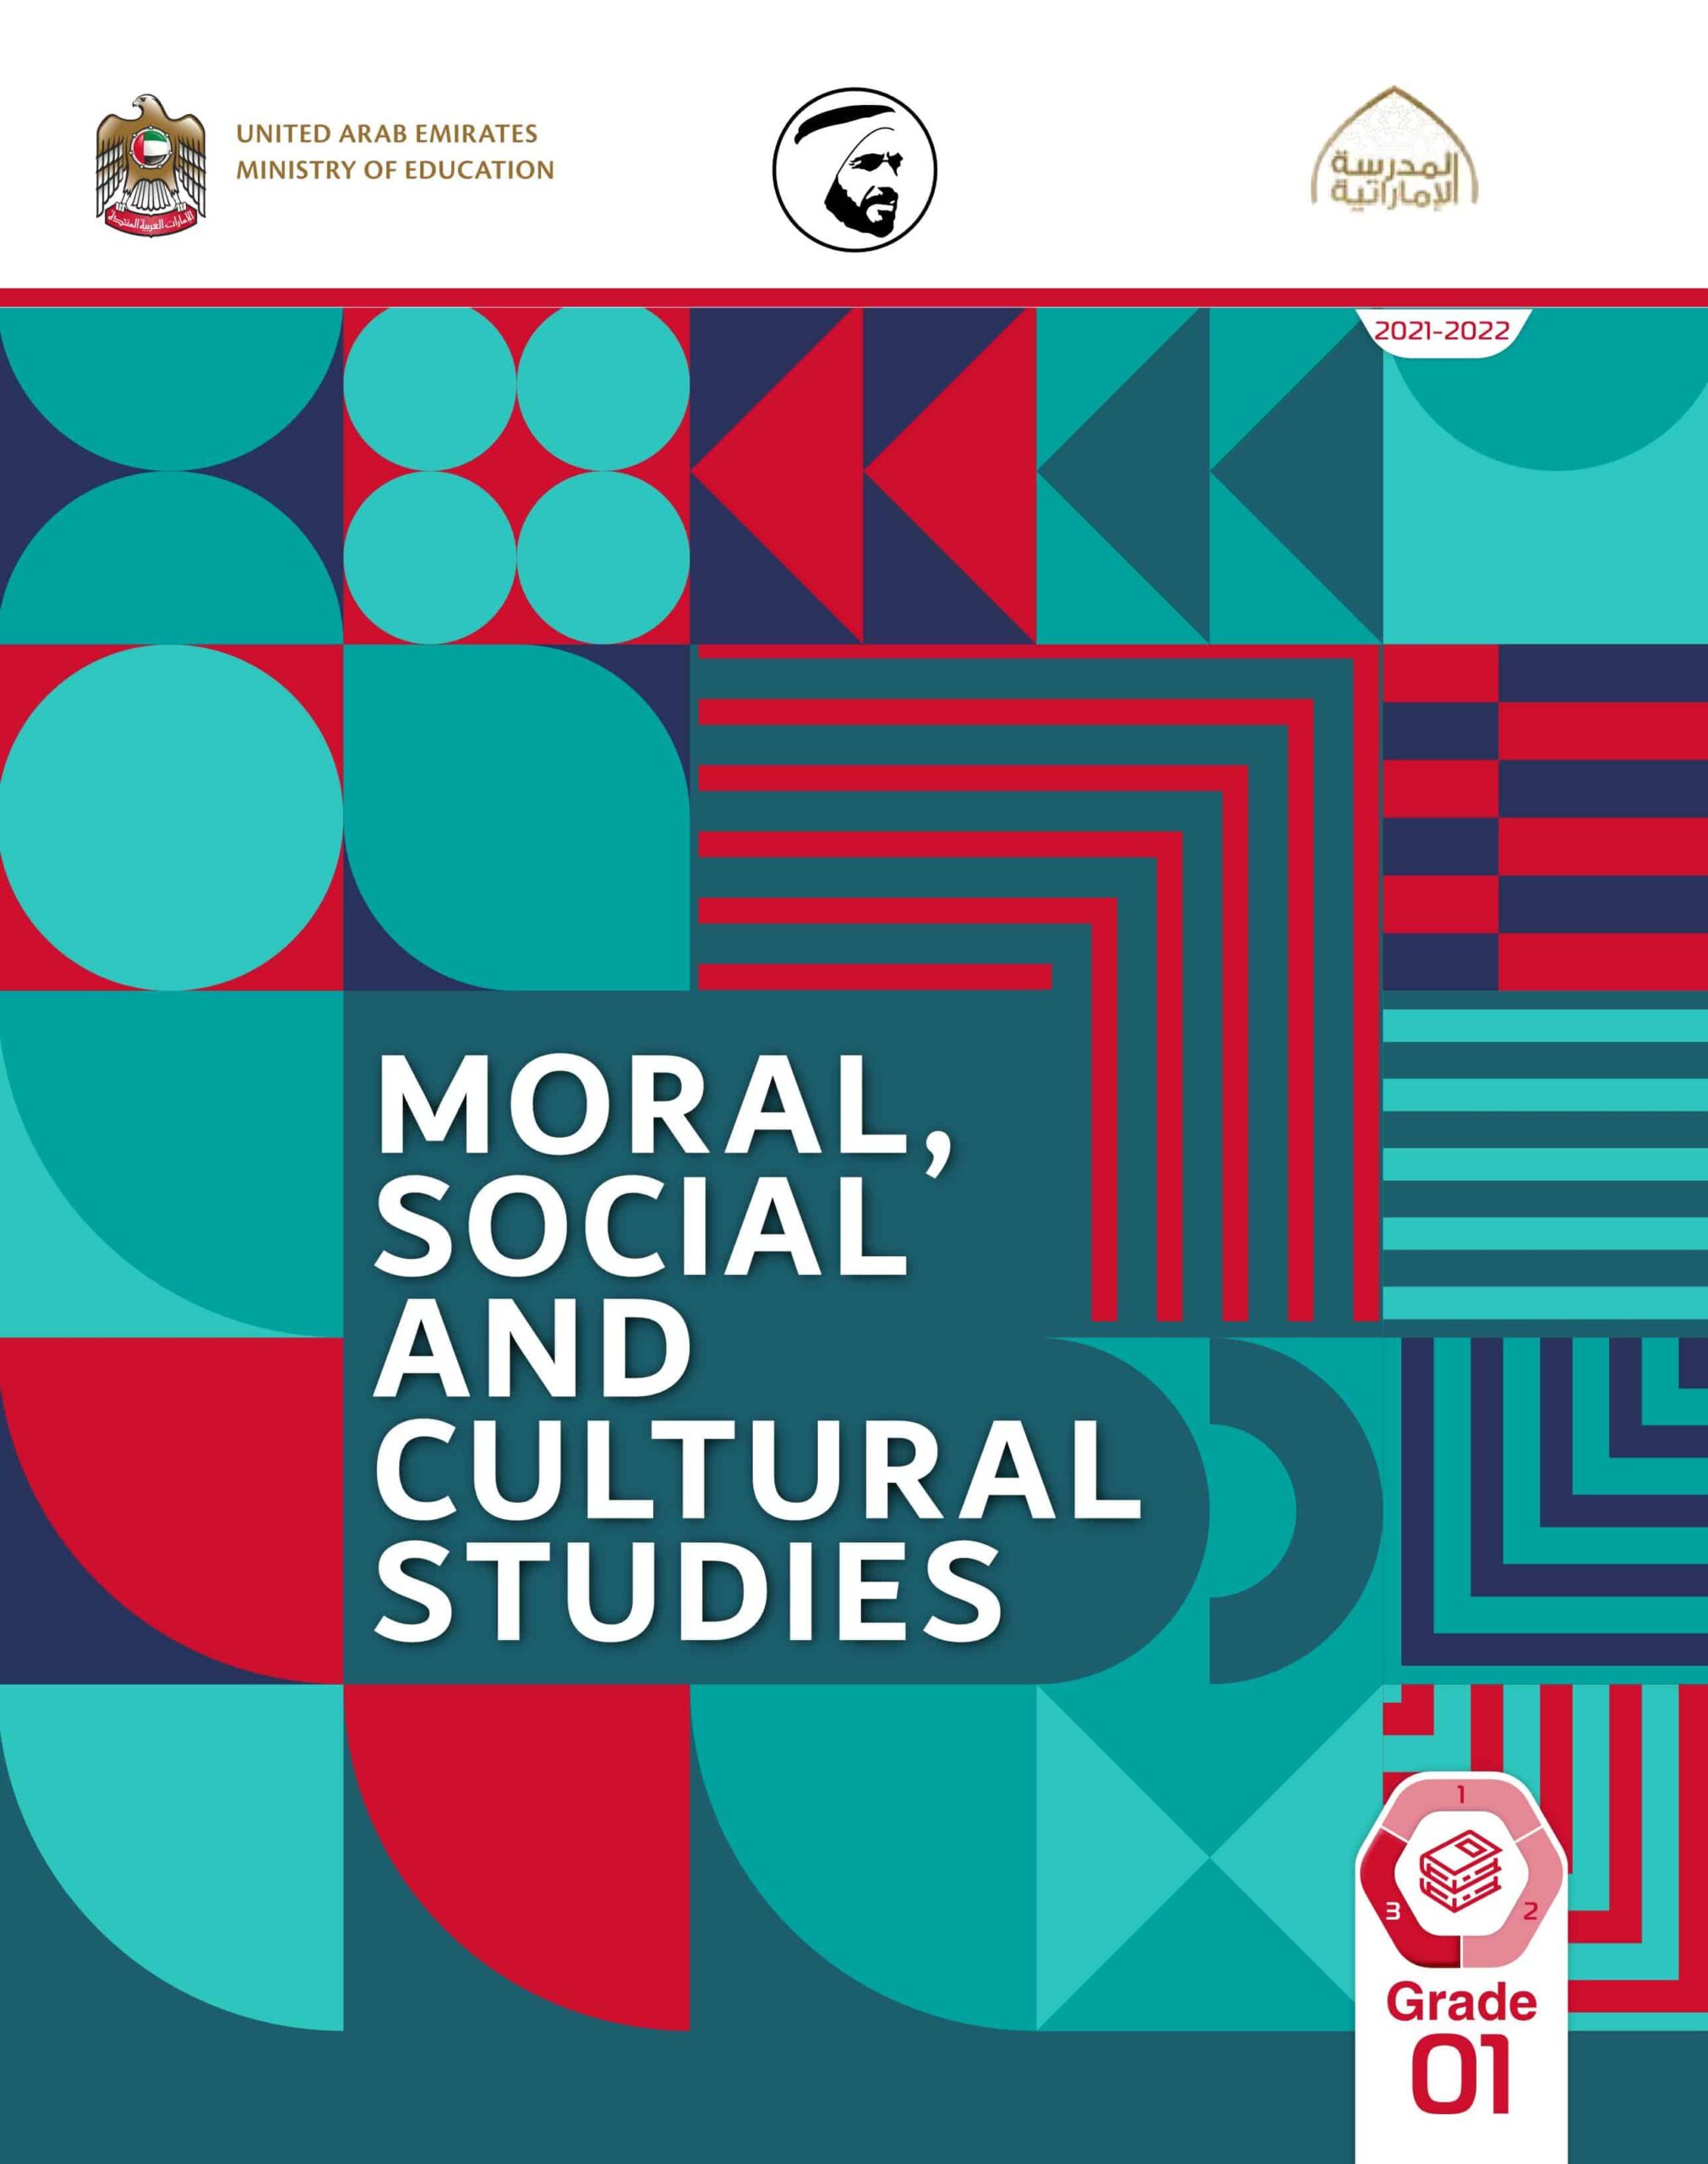 كتاب الطالب لغير الناطقين باللغة العربية Moral, Social & Cultural Studies الصف الأول الفصل الدراسي الثالث 2021-2022